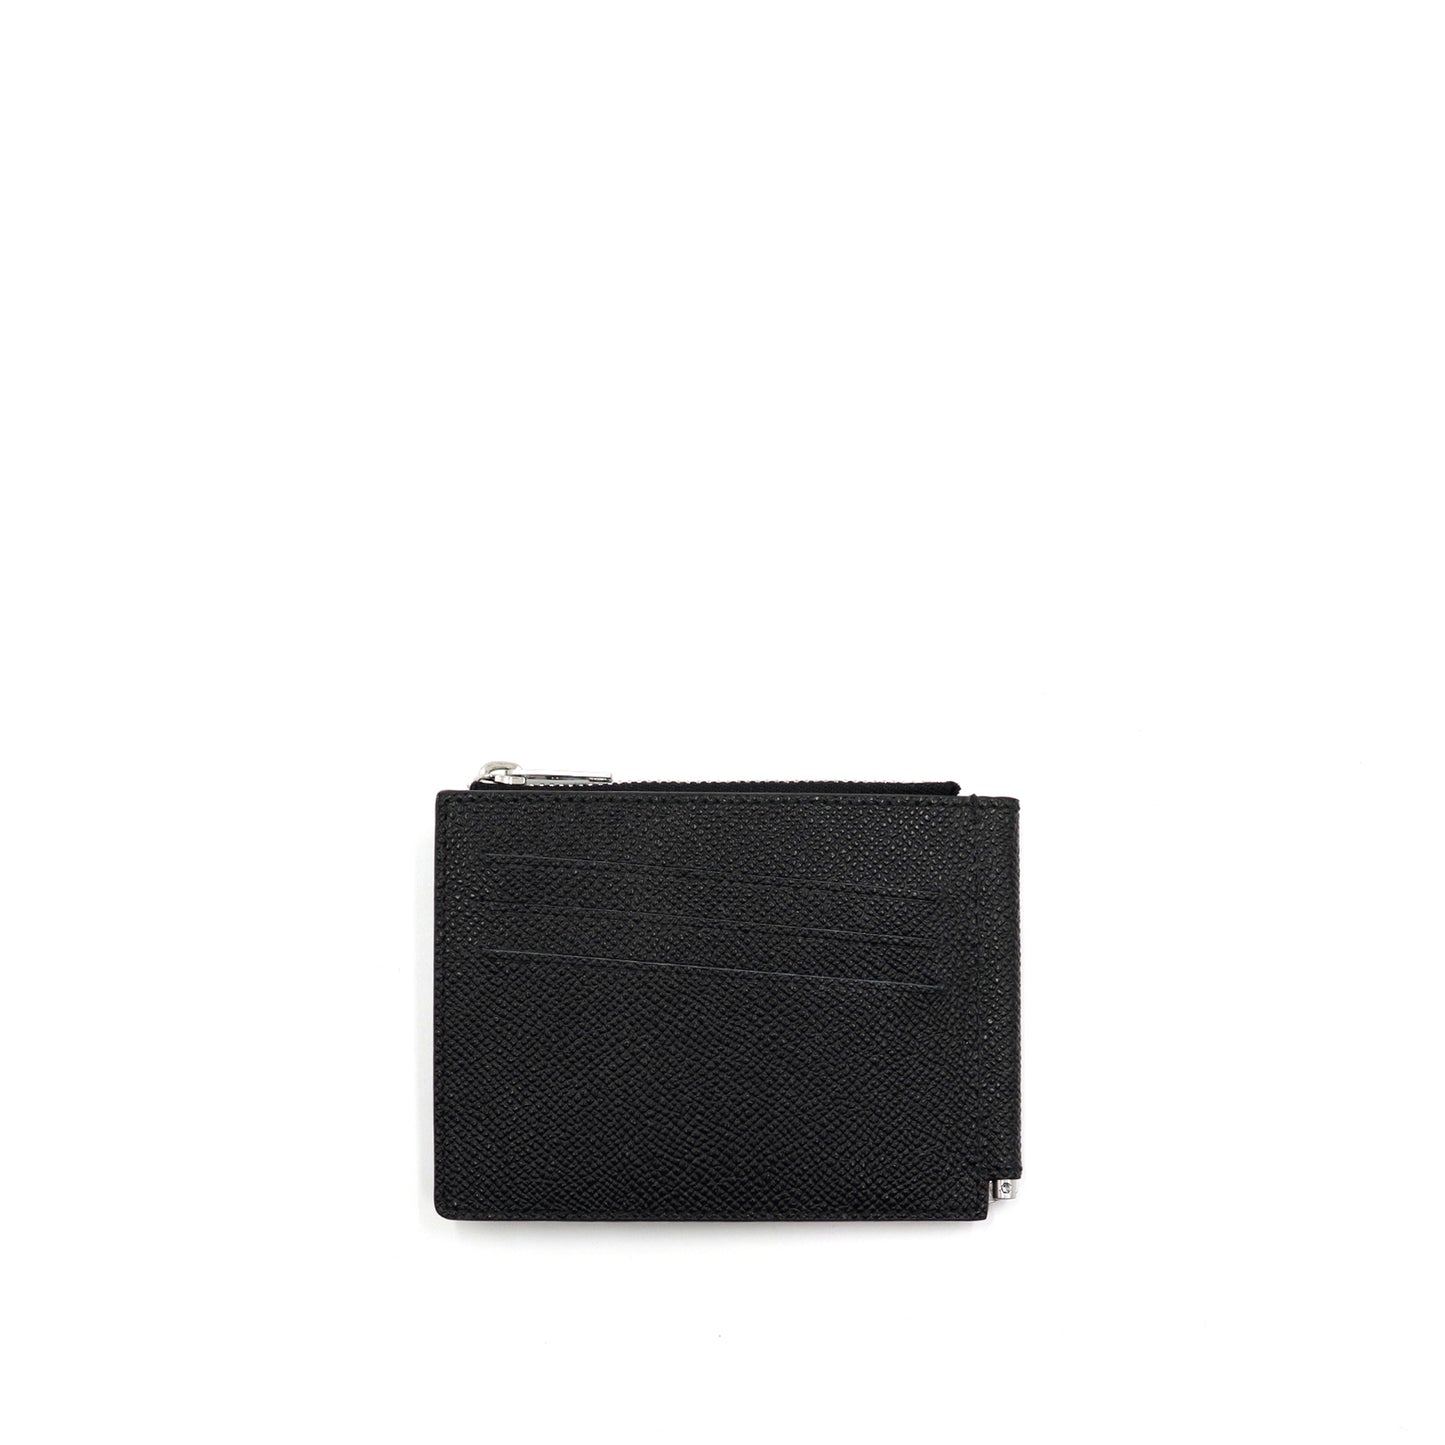 Four Stitch Money Clip Wallet in Black